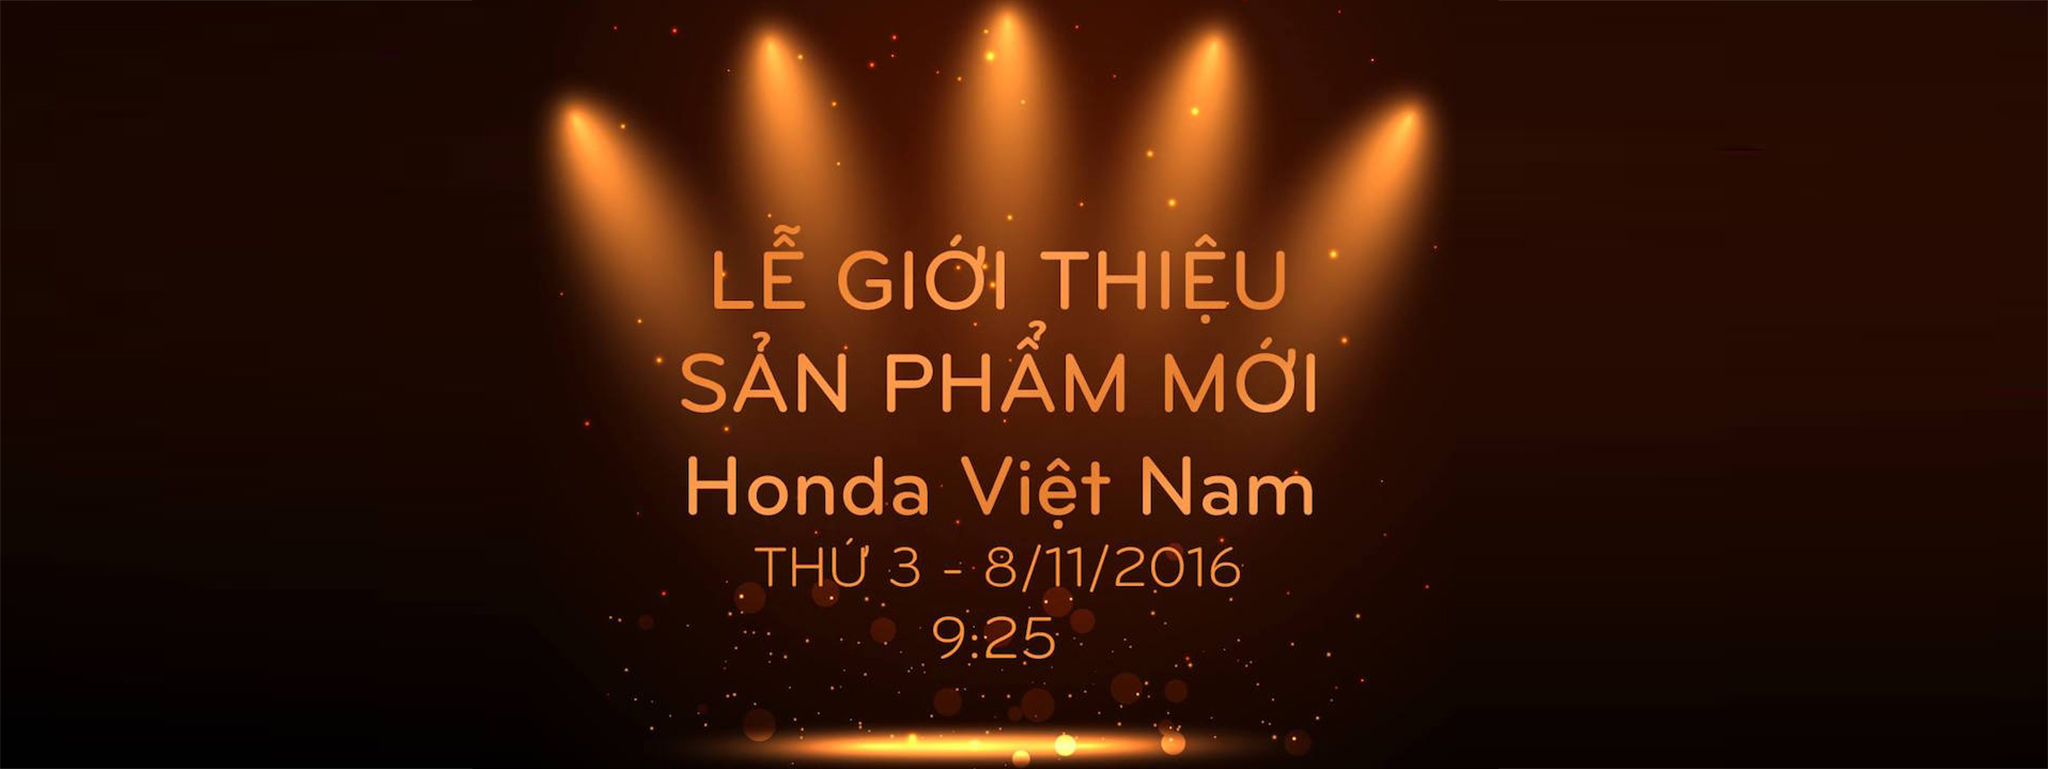 9h25 - Livestream Lễ giới thiệu sản phẩm mới của Honda Việt Nam, có lẽ là SH...